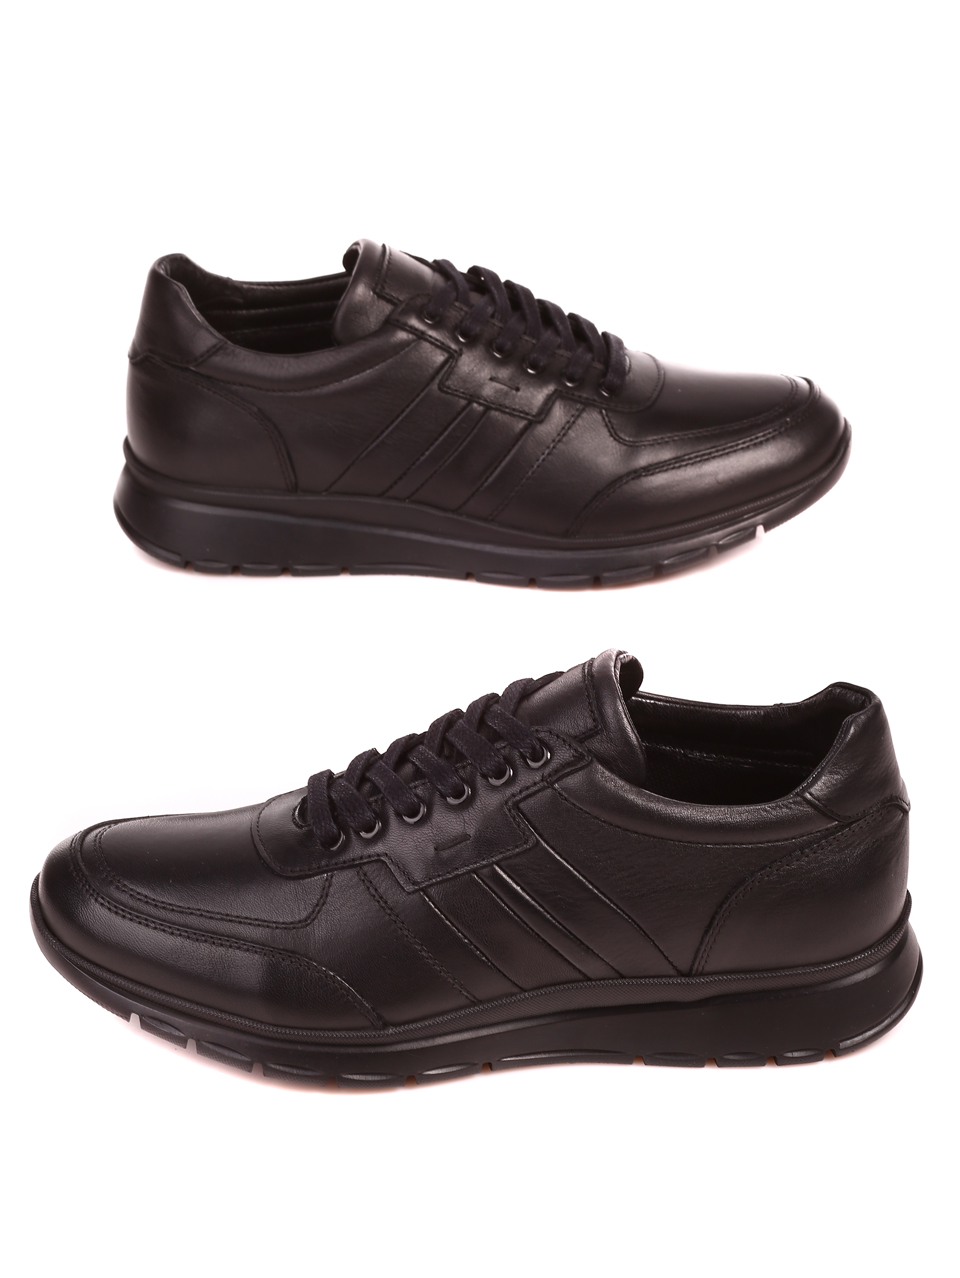 Ежедневни мъжки обувки от естествена кожа 7AT-22703 black